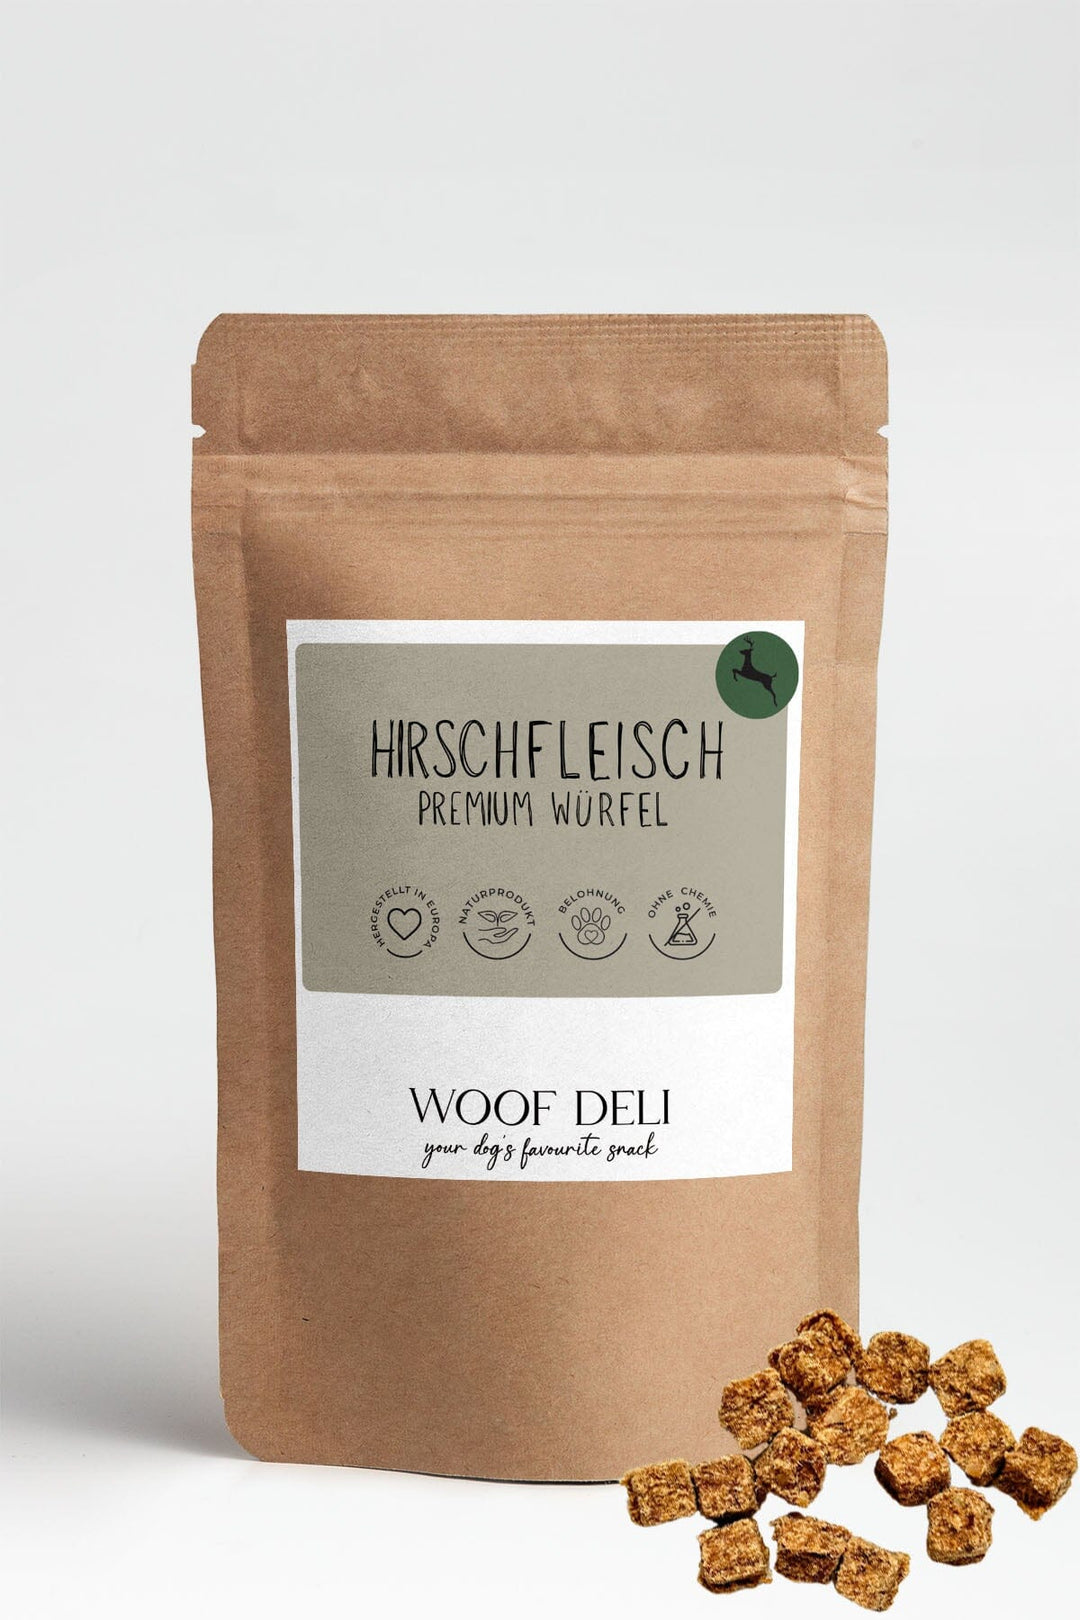 Hirschfleisch Premium Würfel WOOF DELI 